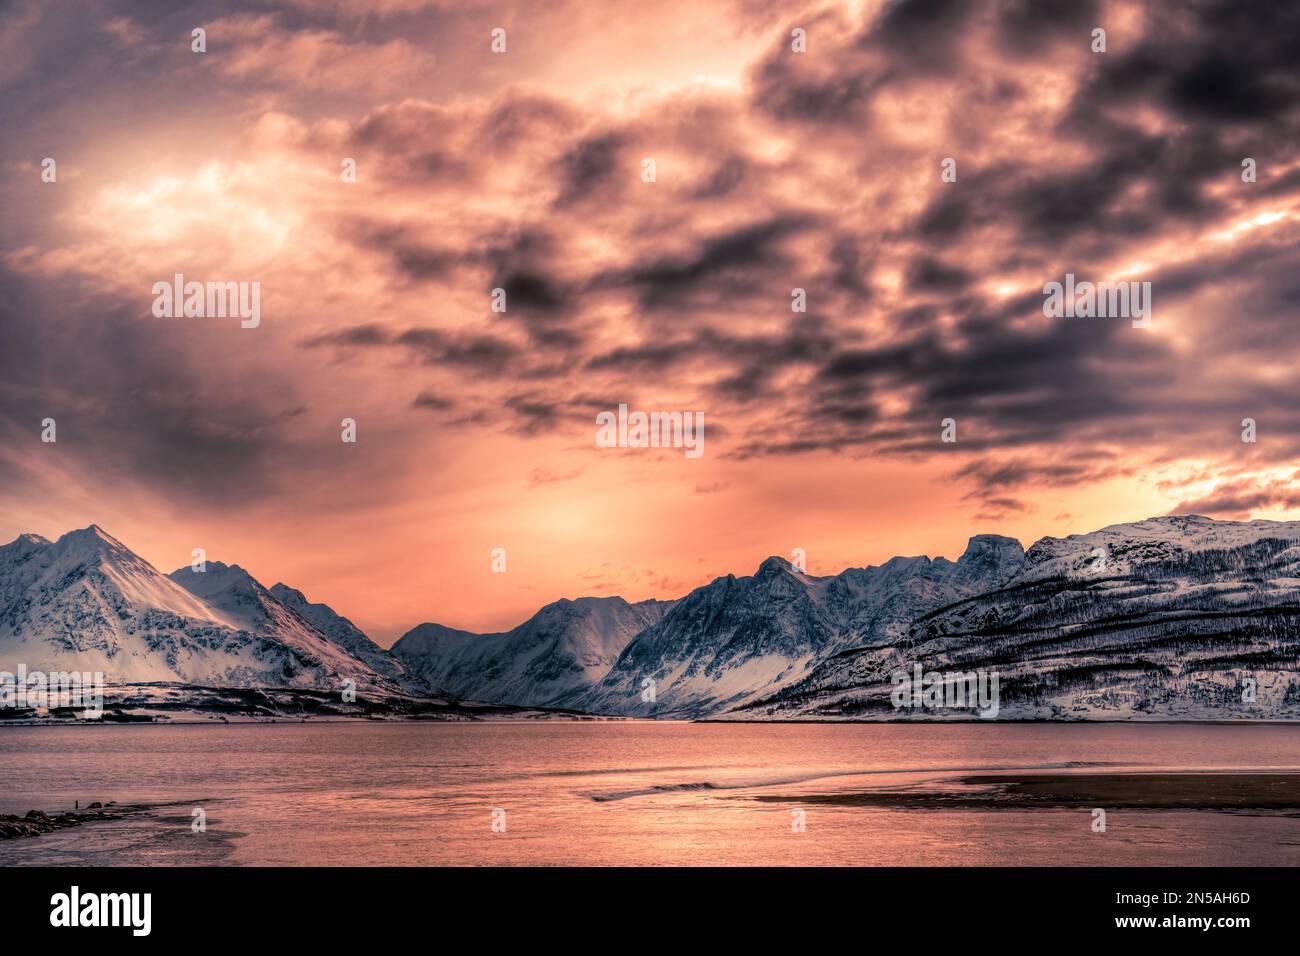 Ein atemberaubender Sonnenuntergang über einem See mit Blick auf die schneebedeckten Berge in der Nähe von Tromso im äußersten Norden Norwegens Stockfoto